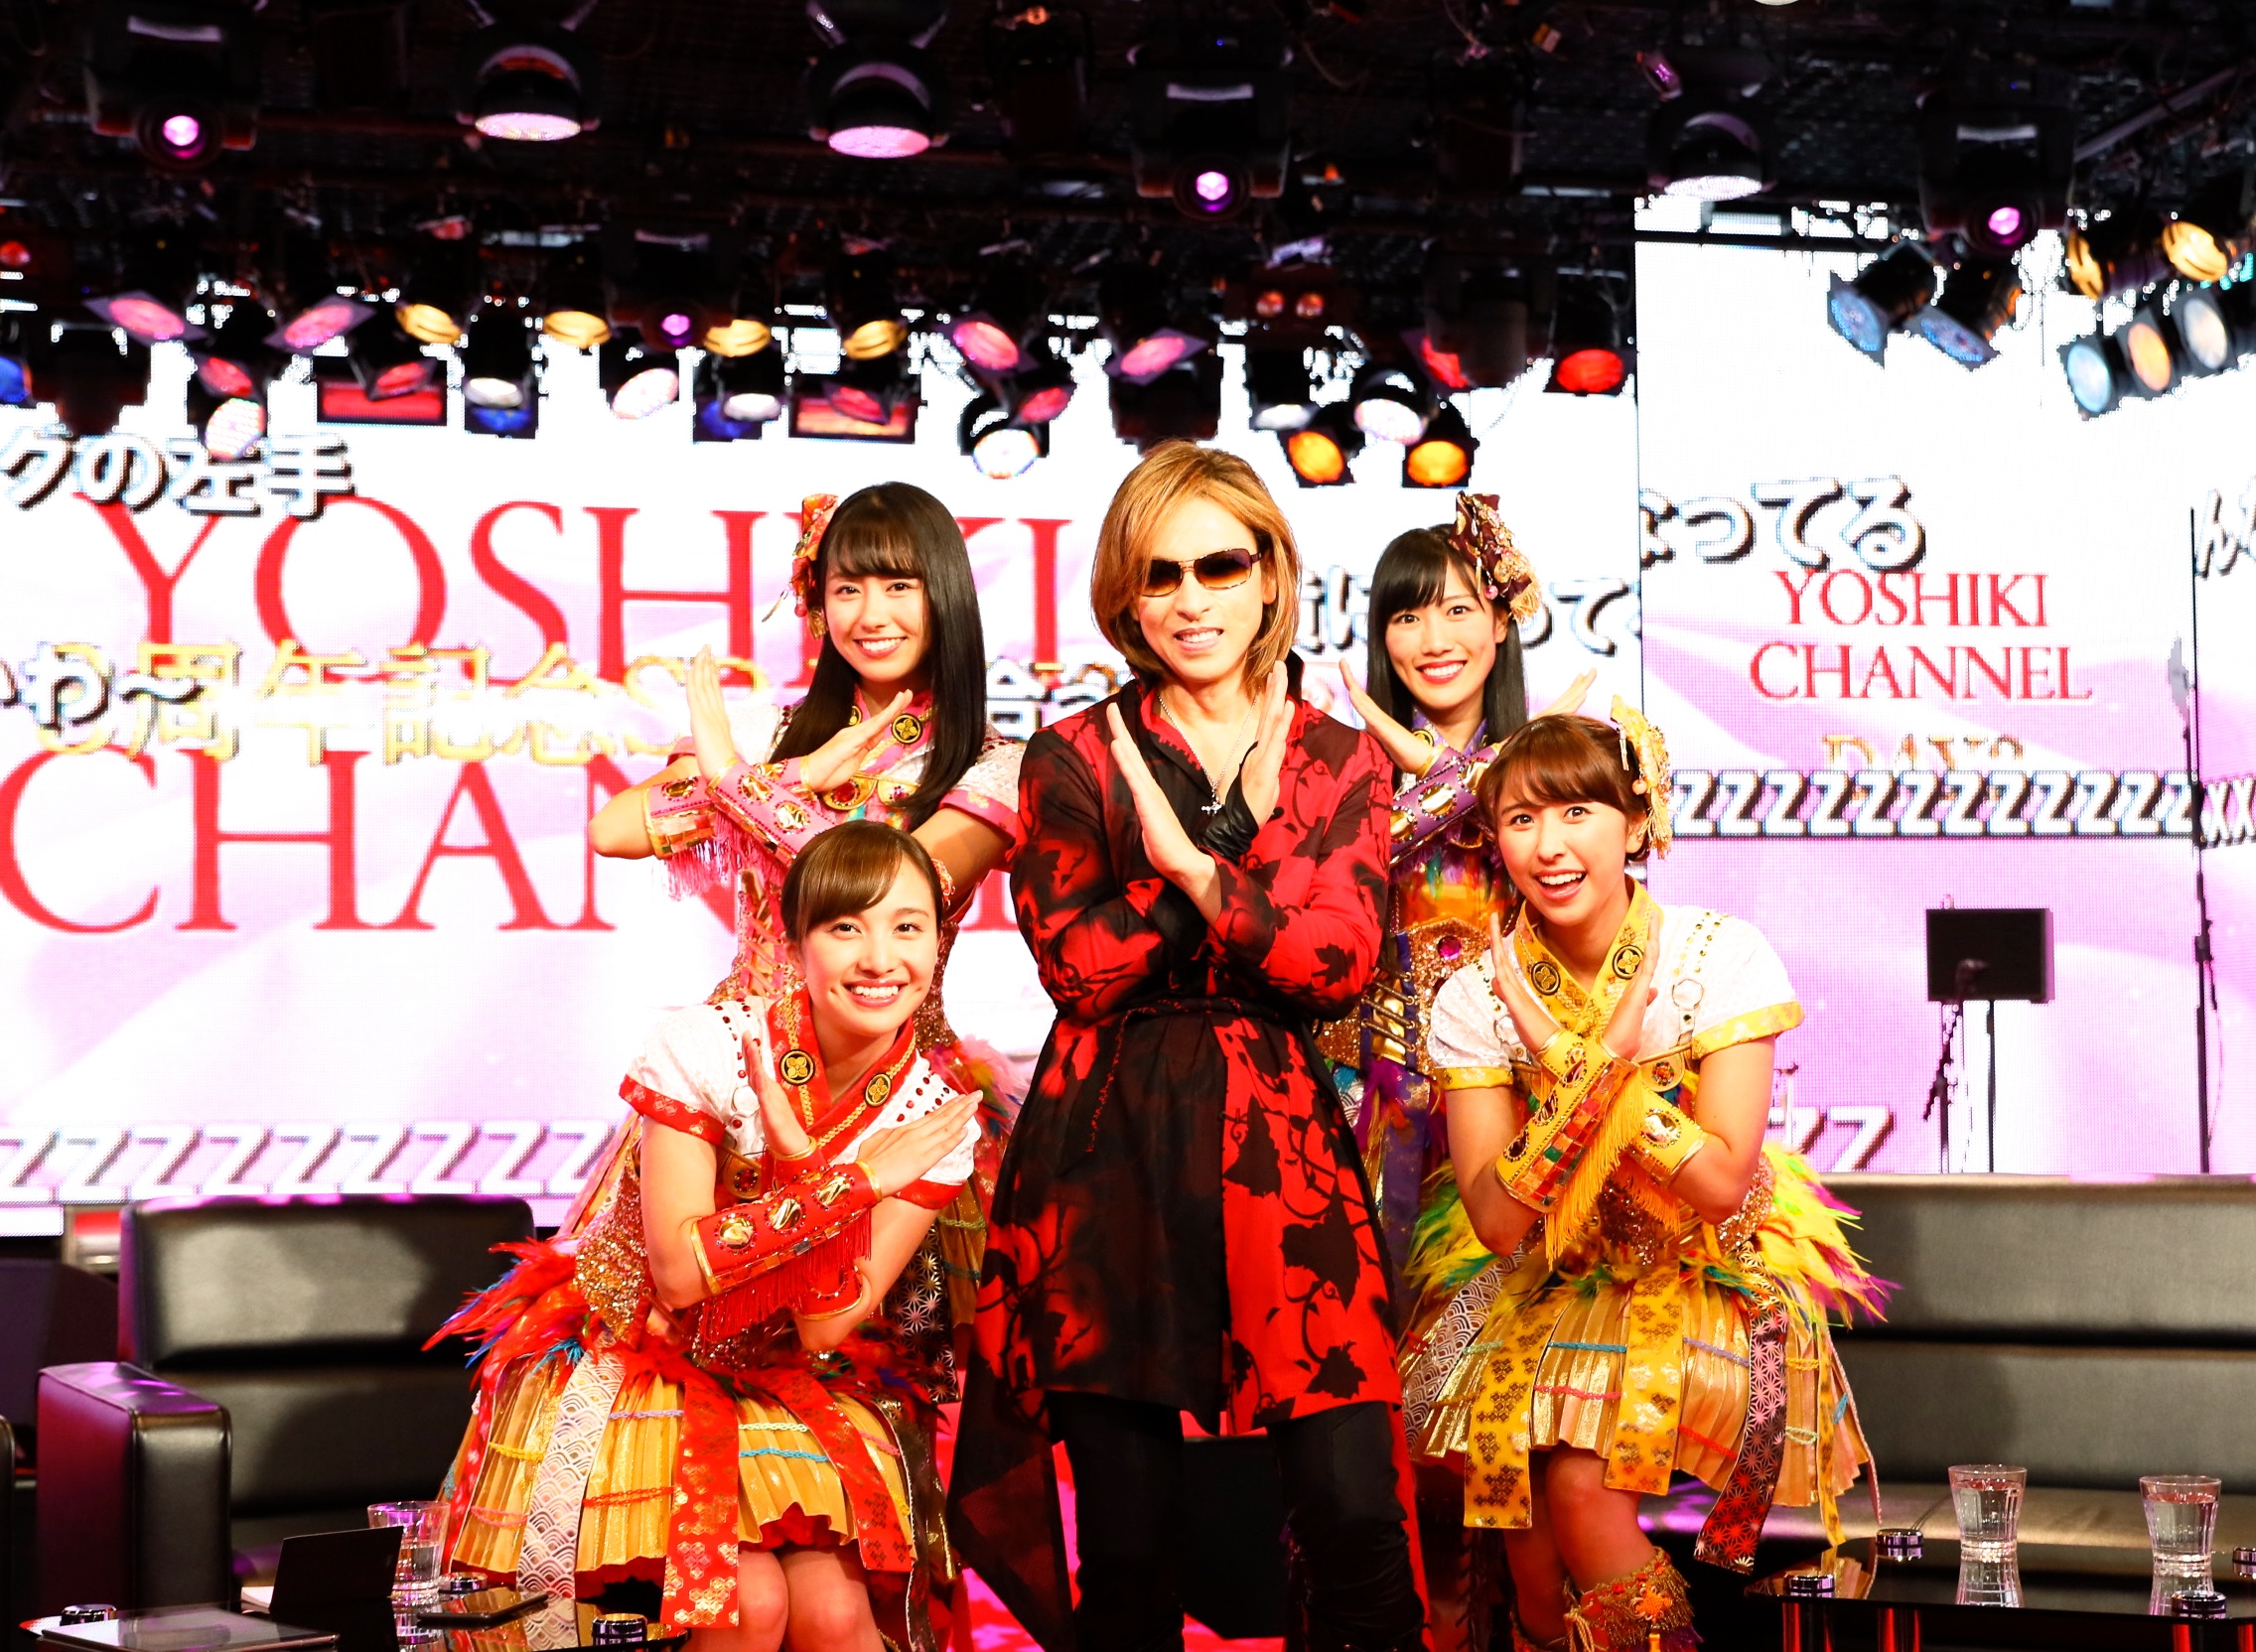 ももいろクローバーzも 紅 を歌う Yoshiki Channel 3周年に相応しい豪華すぎるゲストが続々出演 Yoshiki Pr事務局のプレスリリース